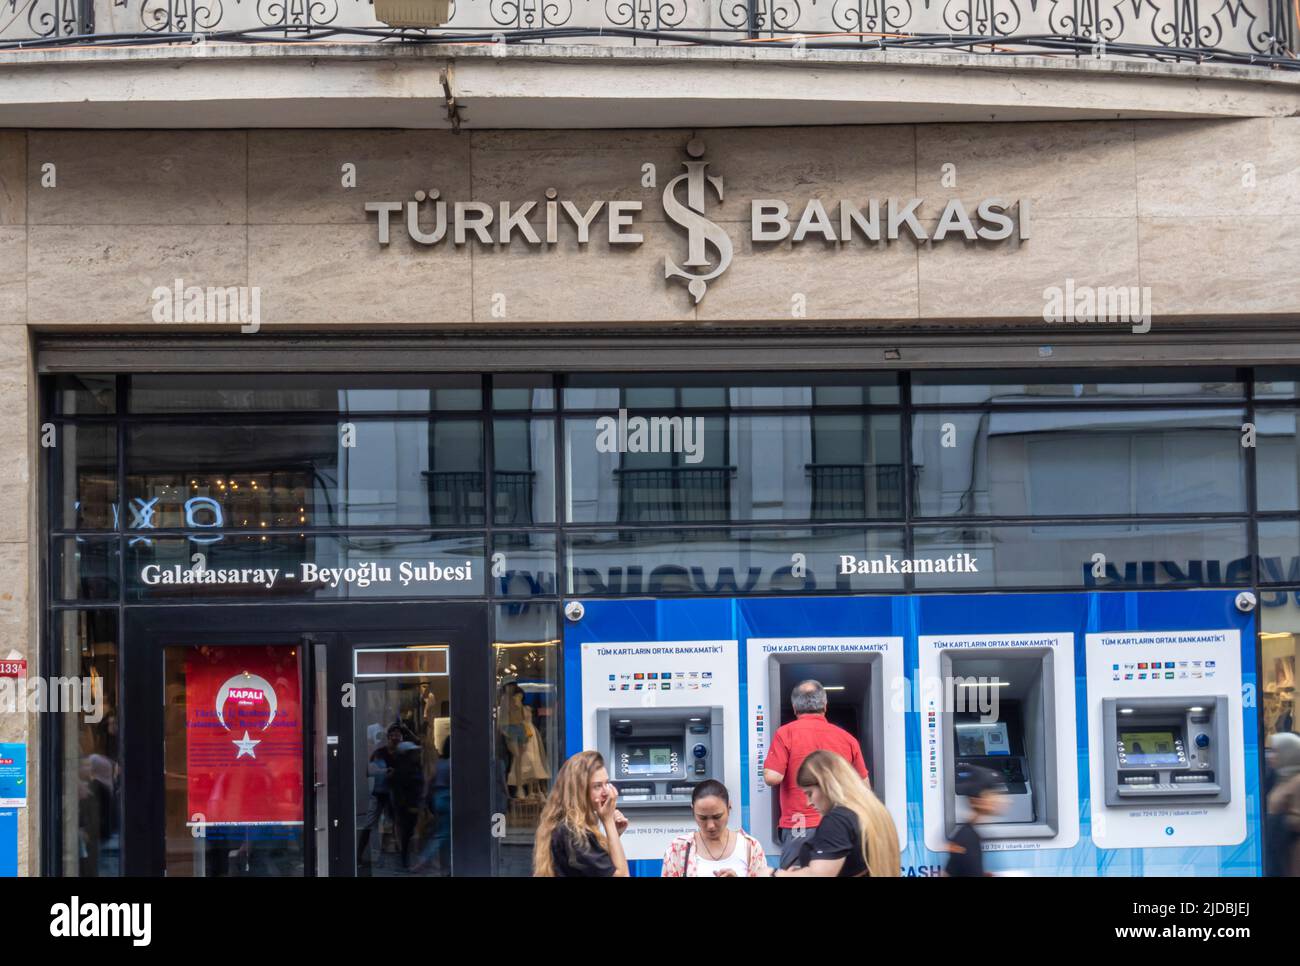 İşbank (Türkiye İş Bankası) Empresa bancaria comercial isbank - cajeros automáticos en Taksim, Estambul, Turquía Foto de stock